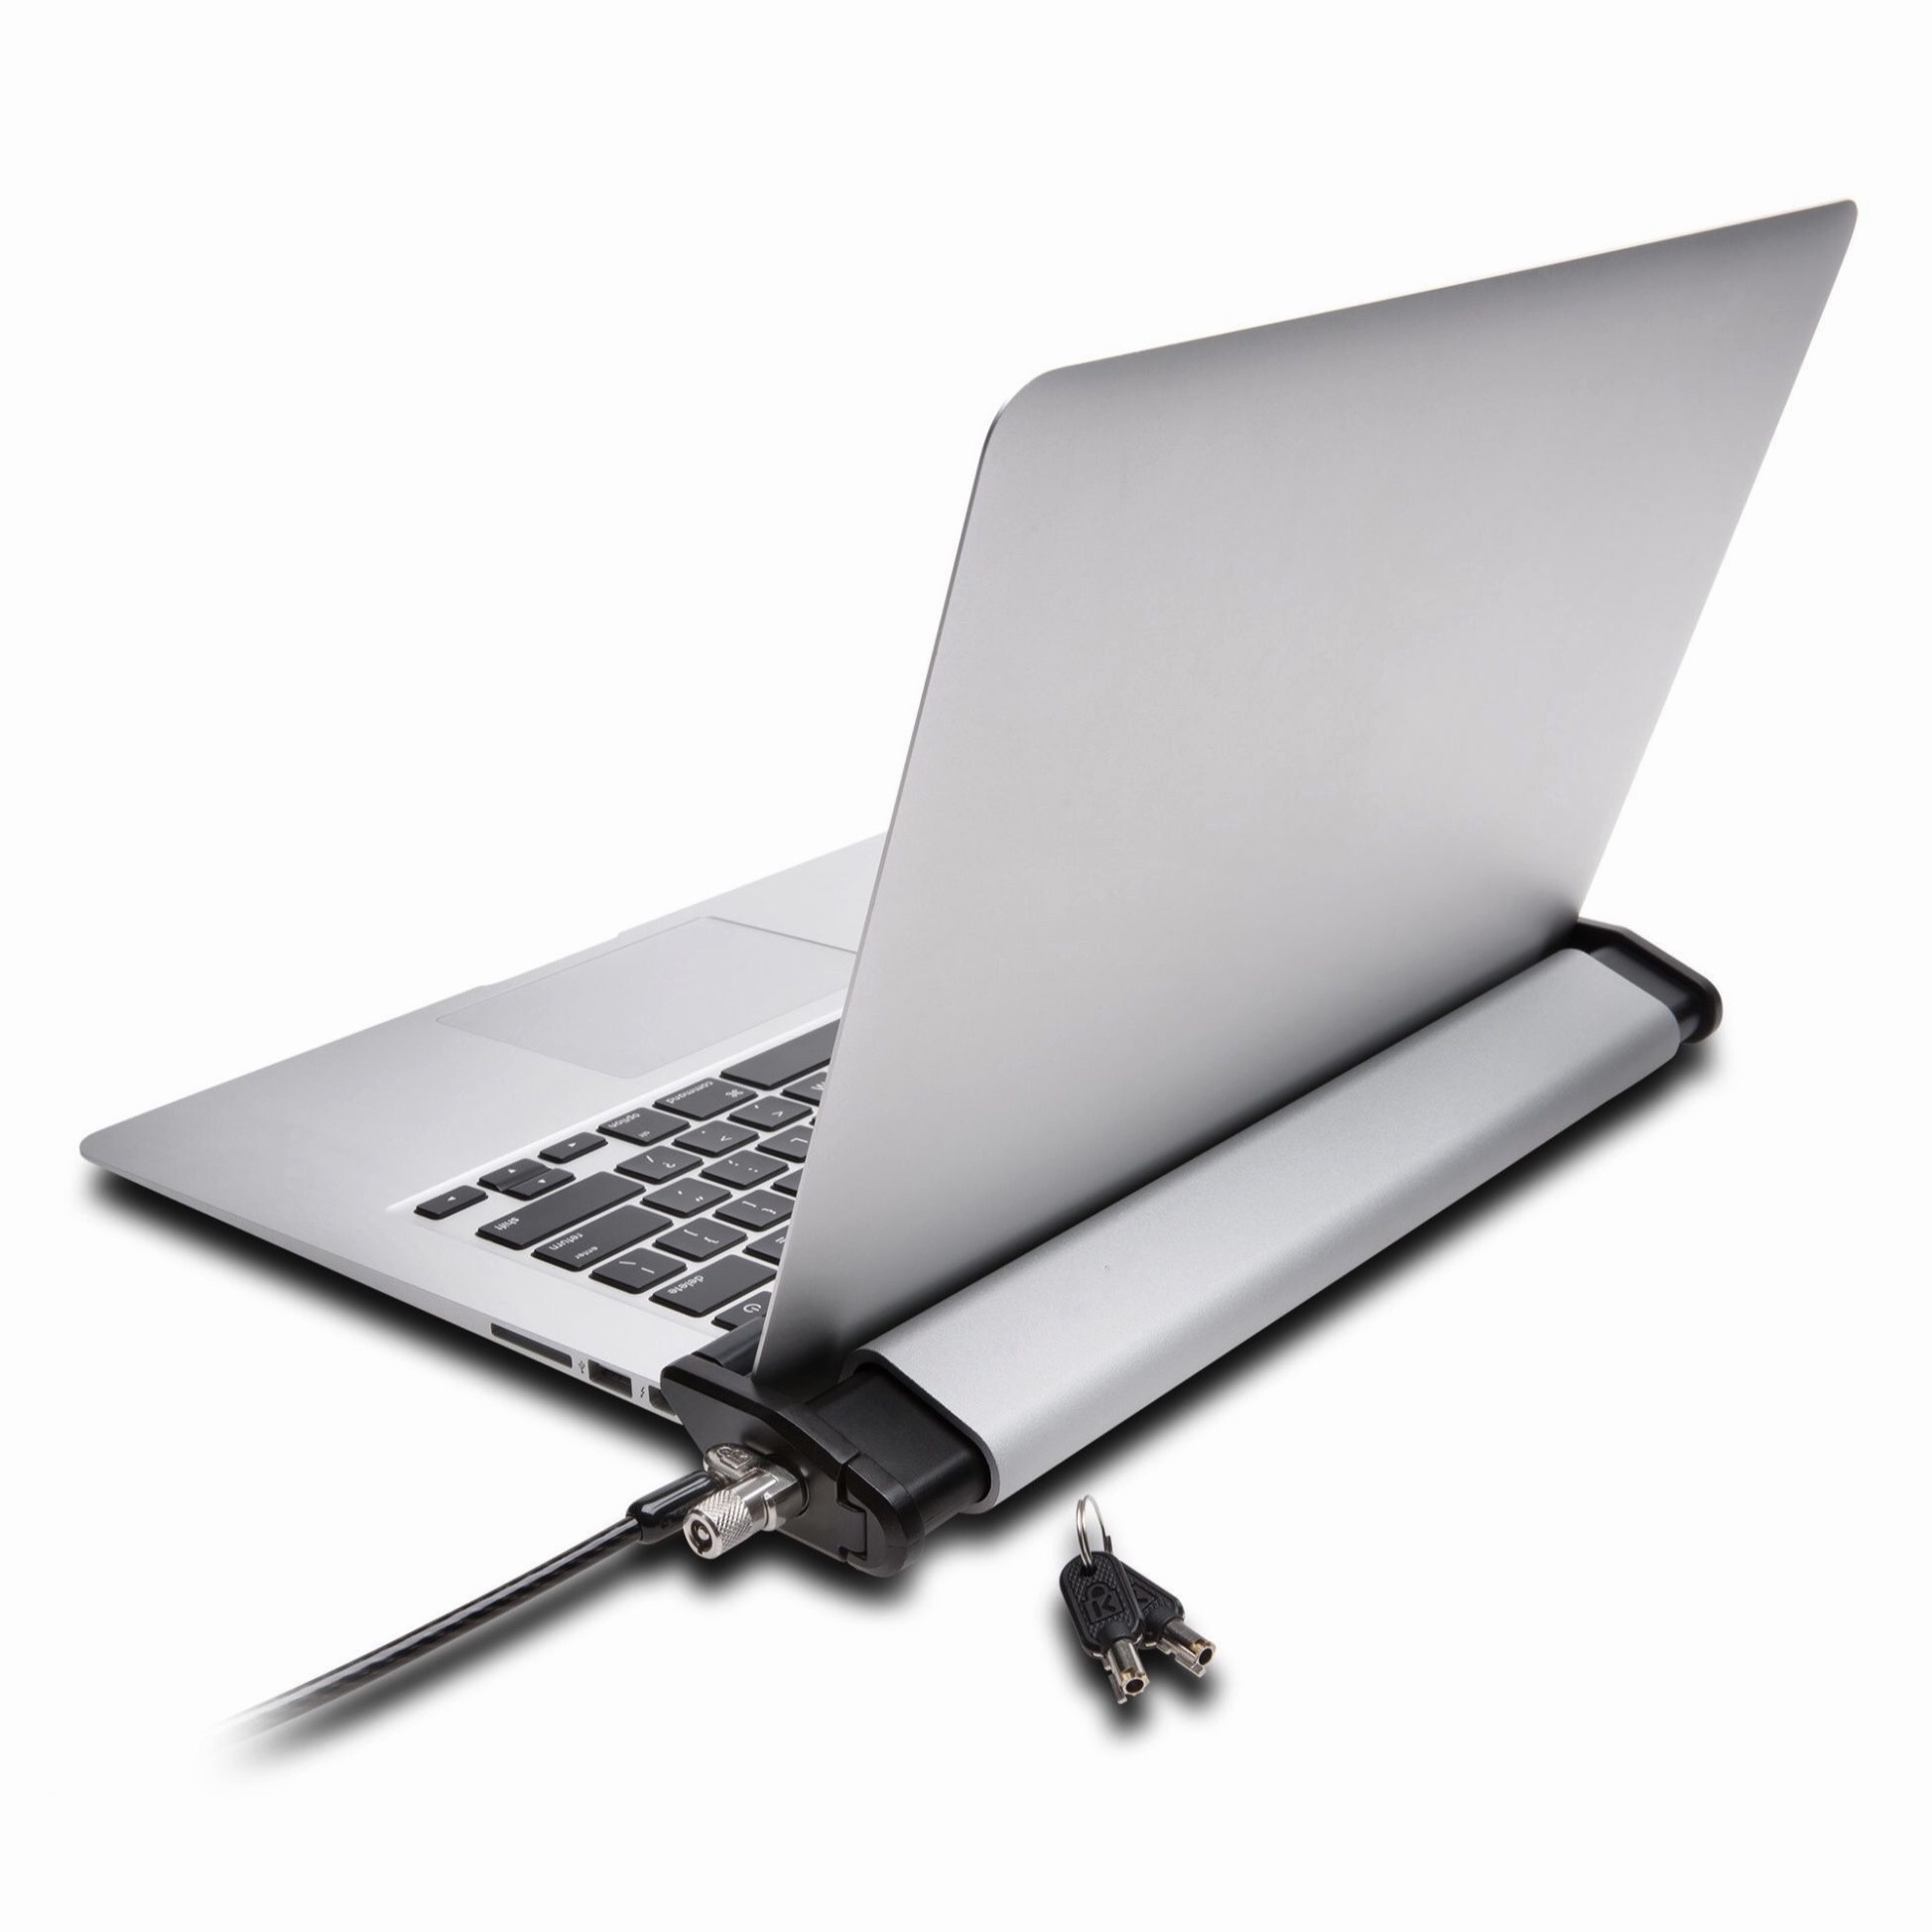 Support Antivol Surface Laptop et cable acier trempe